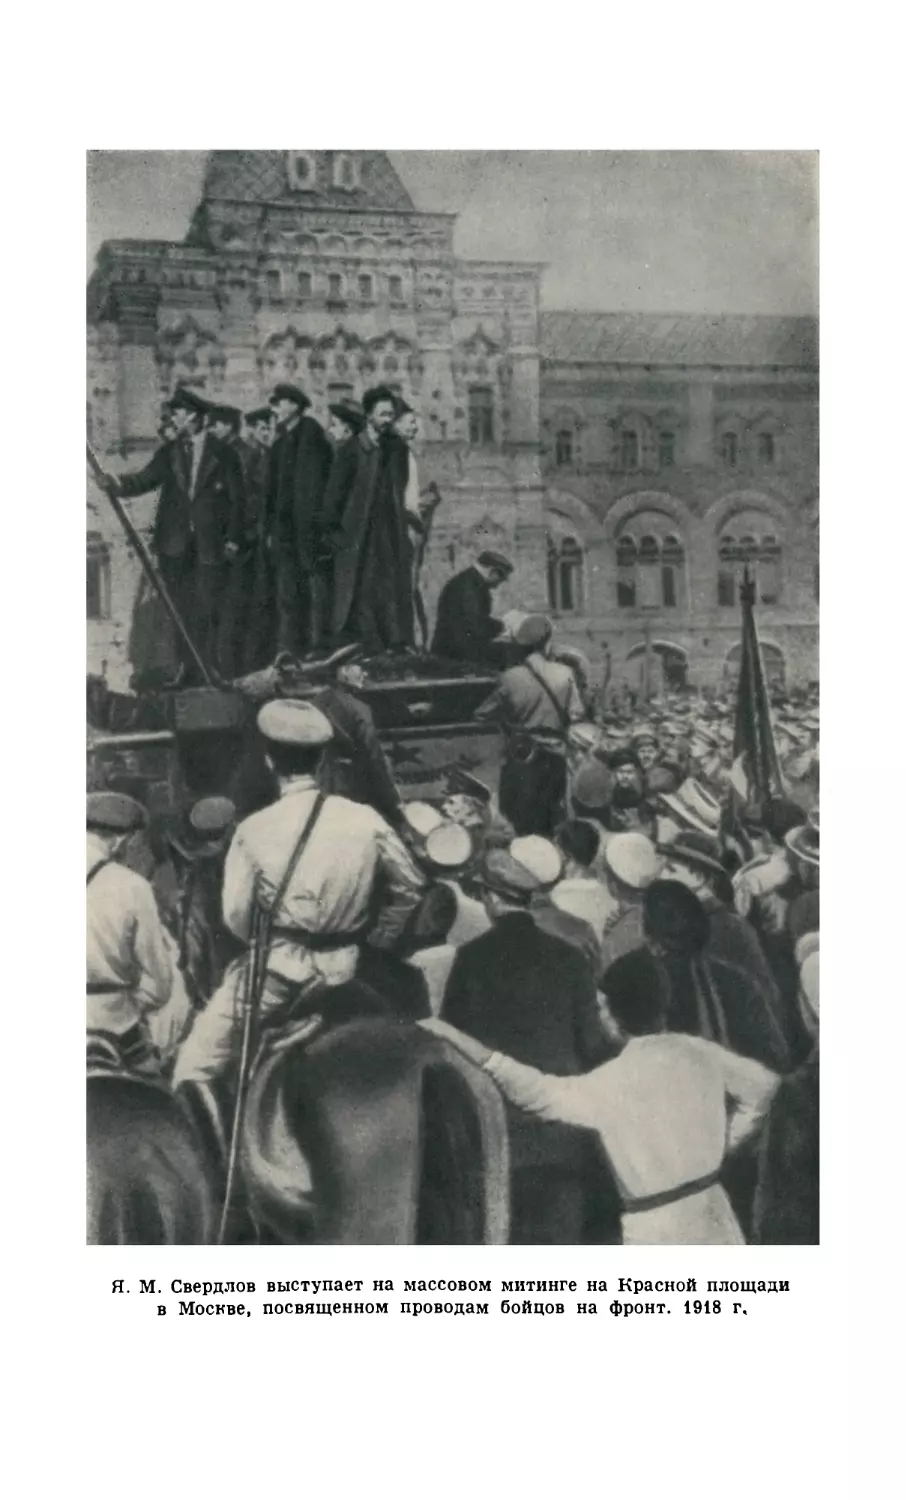 Я. М. Свердлов выступает на массовом митинге на Красной площади в Москве, посвященном проводам бойцов на фронт. 1918 г